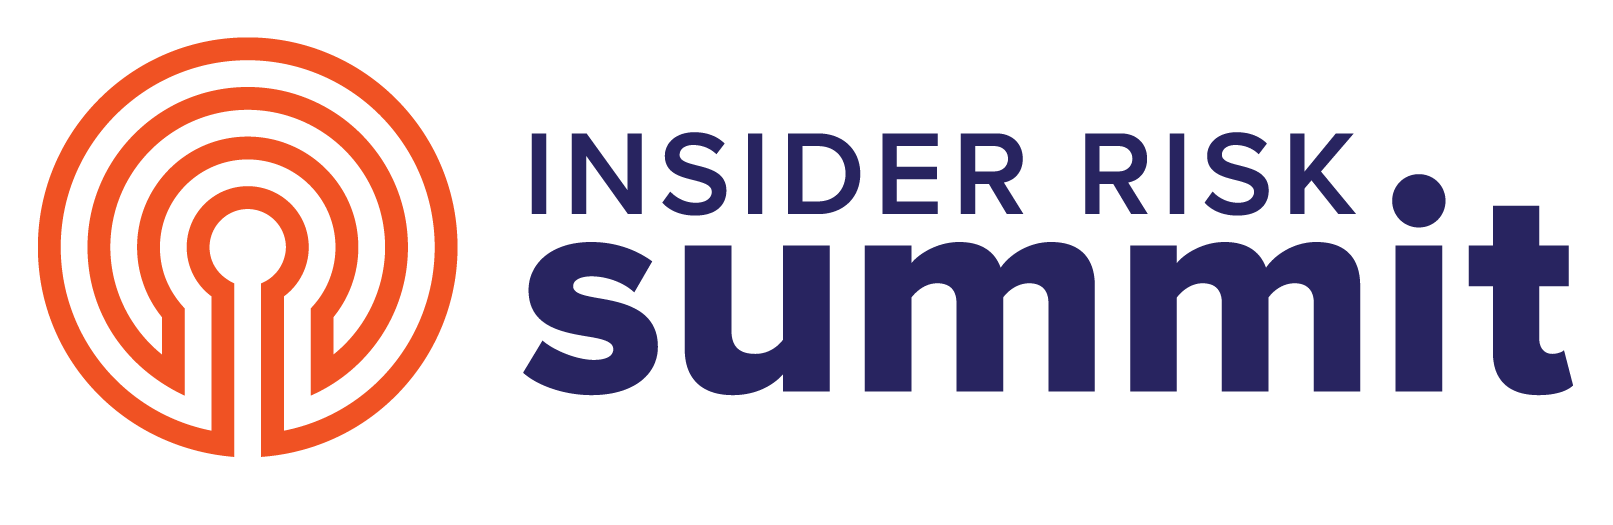 Insider risk summit logo.